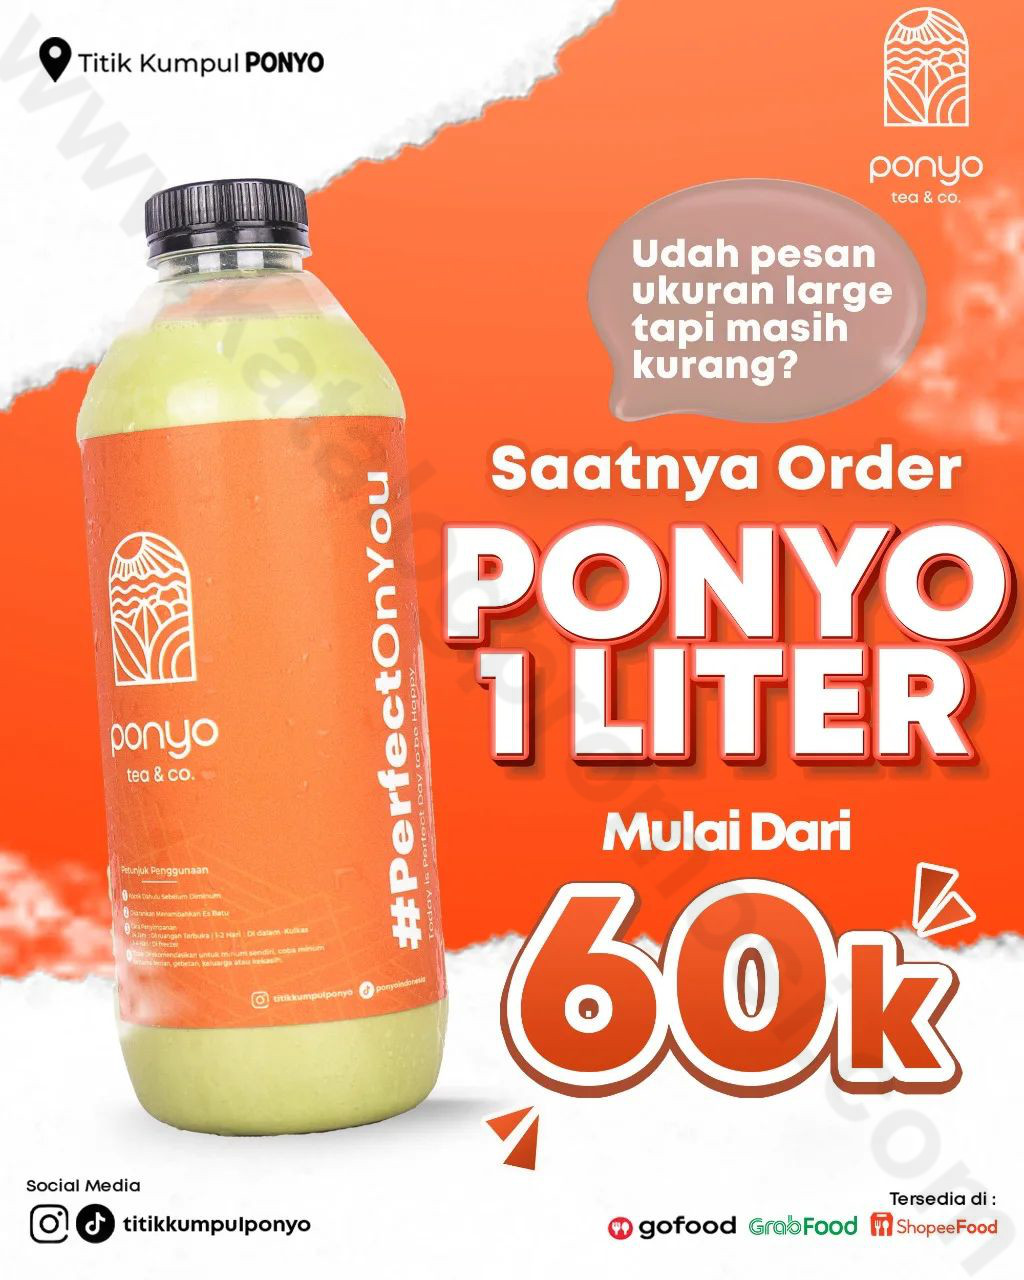 Ponyo Promo Harga Spesial Ponyo Kemasan 1 Liter mulai dari Rp 60.000